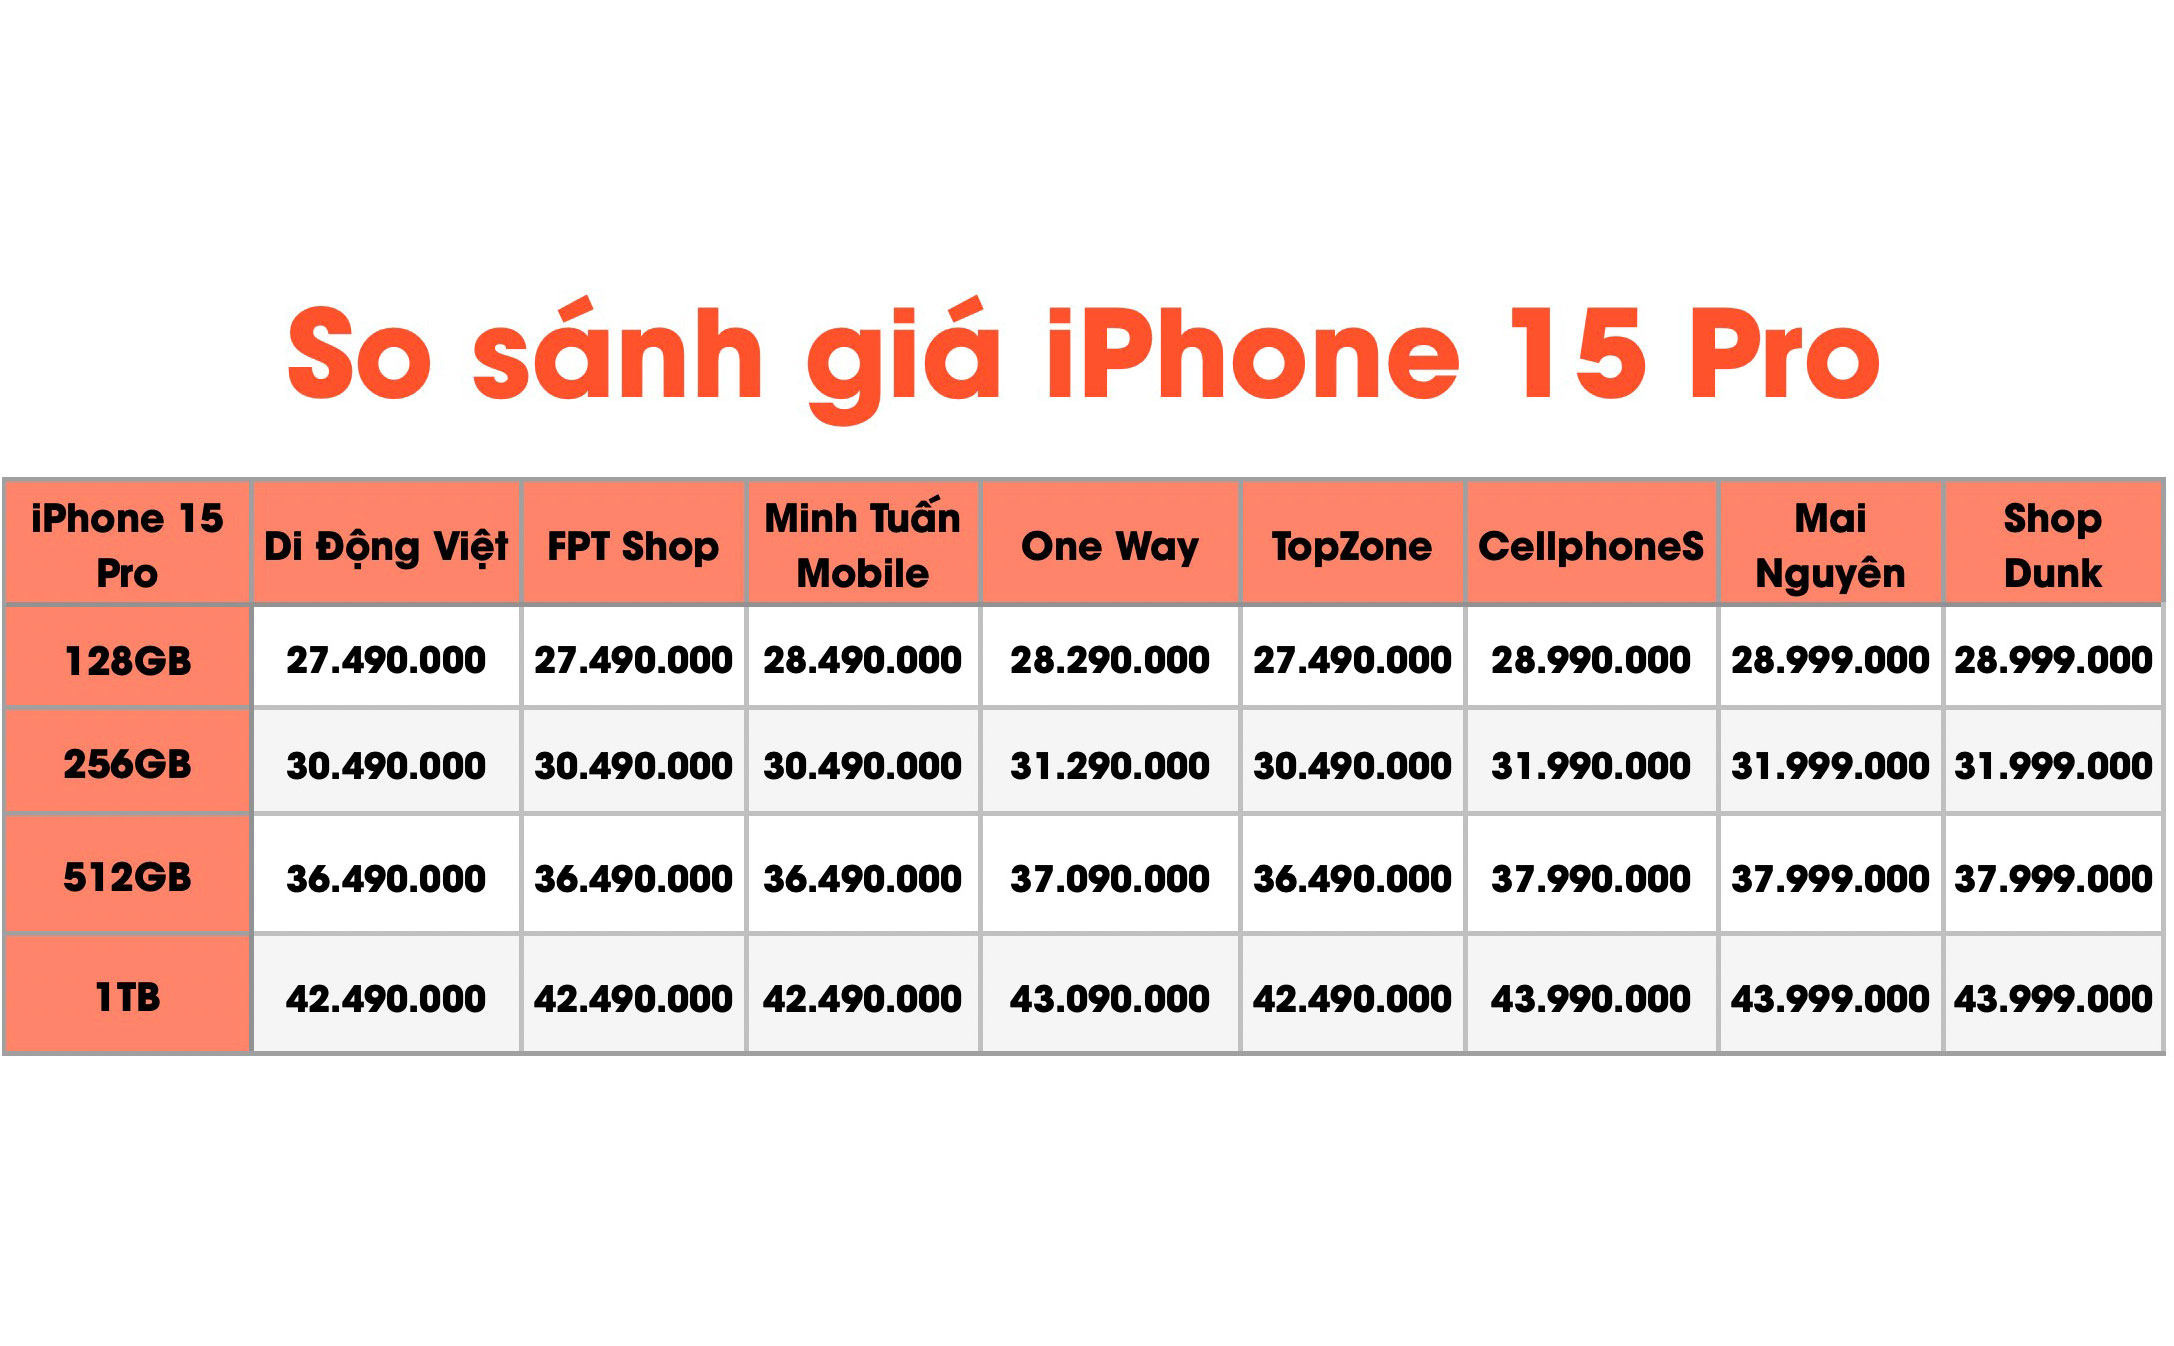 Cập nhật giá iPhone 15 series ngày 18/9/23, có sự điều chỉnh giá từ các cửa hàng